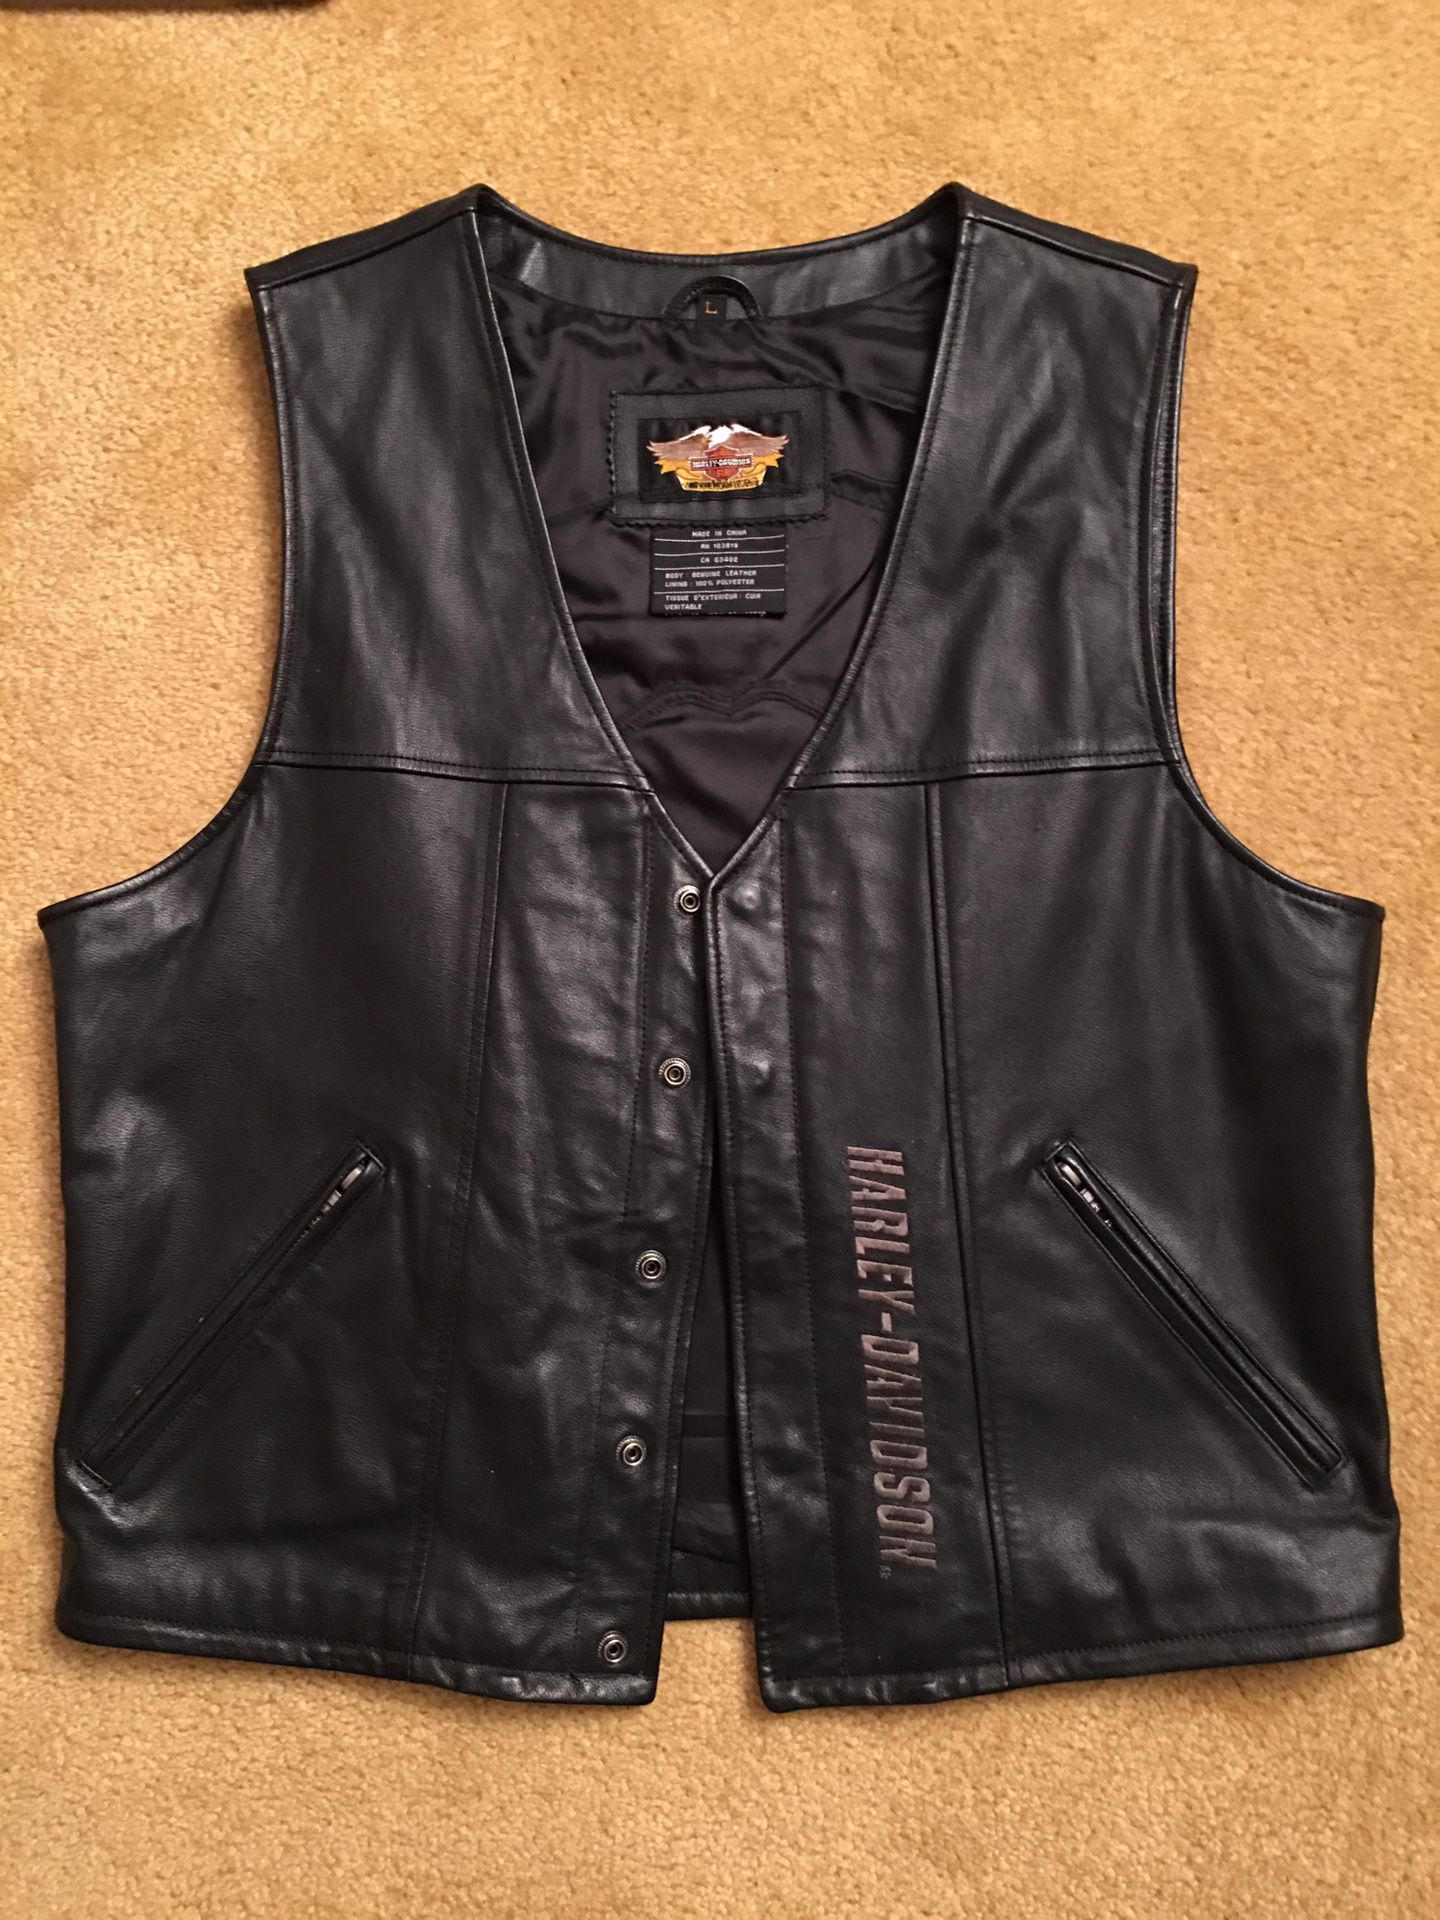 Men’s Large Harley Davidson Black leather Vest